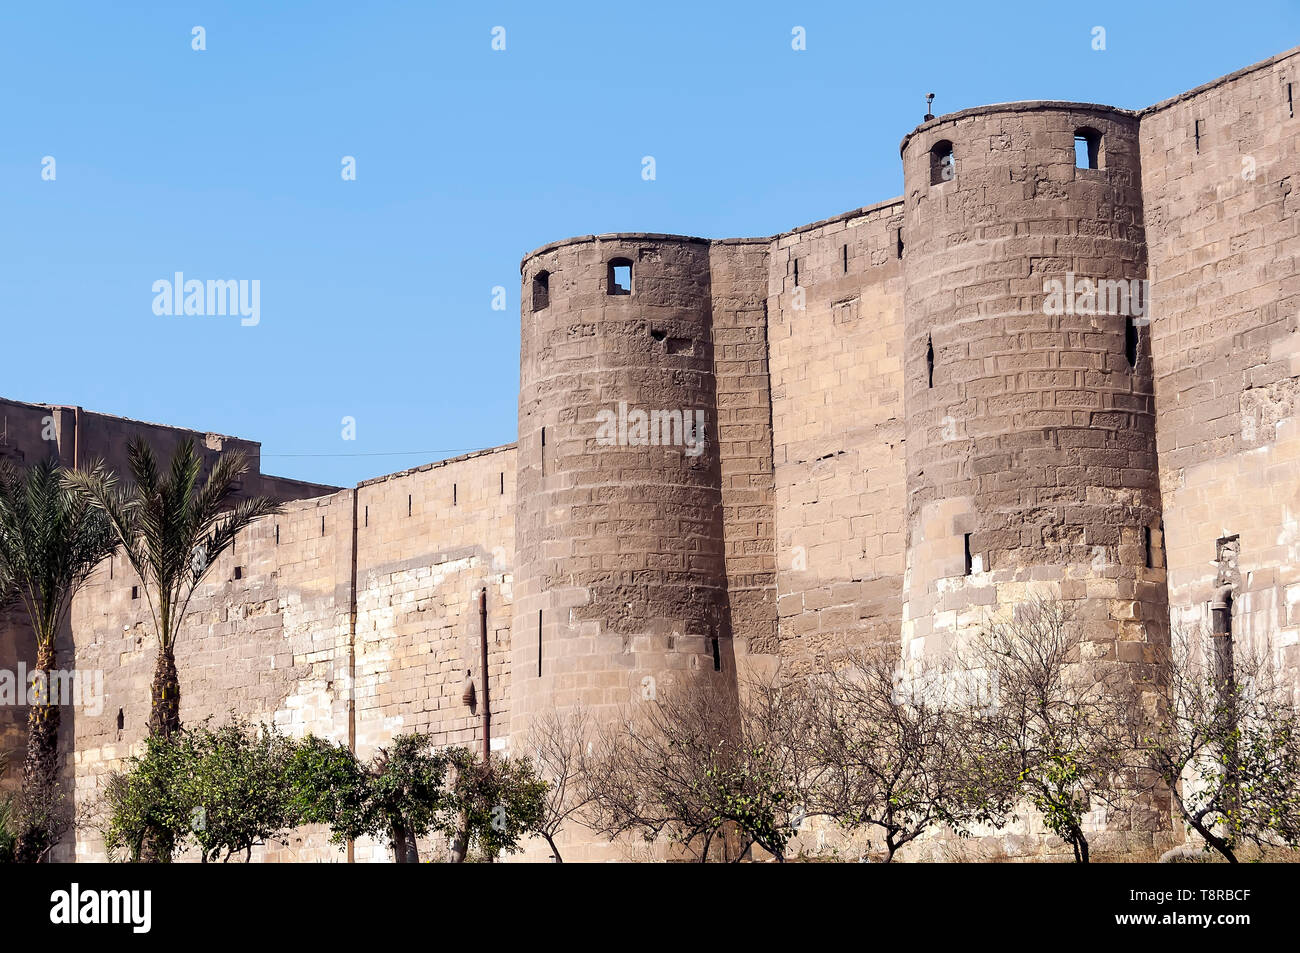 Mauern und Türme der Zitadelle von Salah El Din oder Saladin Zitadelle in Kairo Ägypten Stockfoto